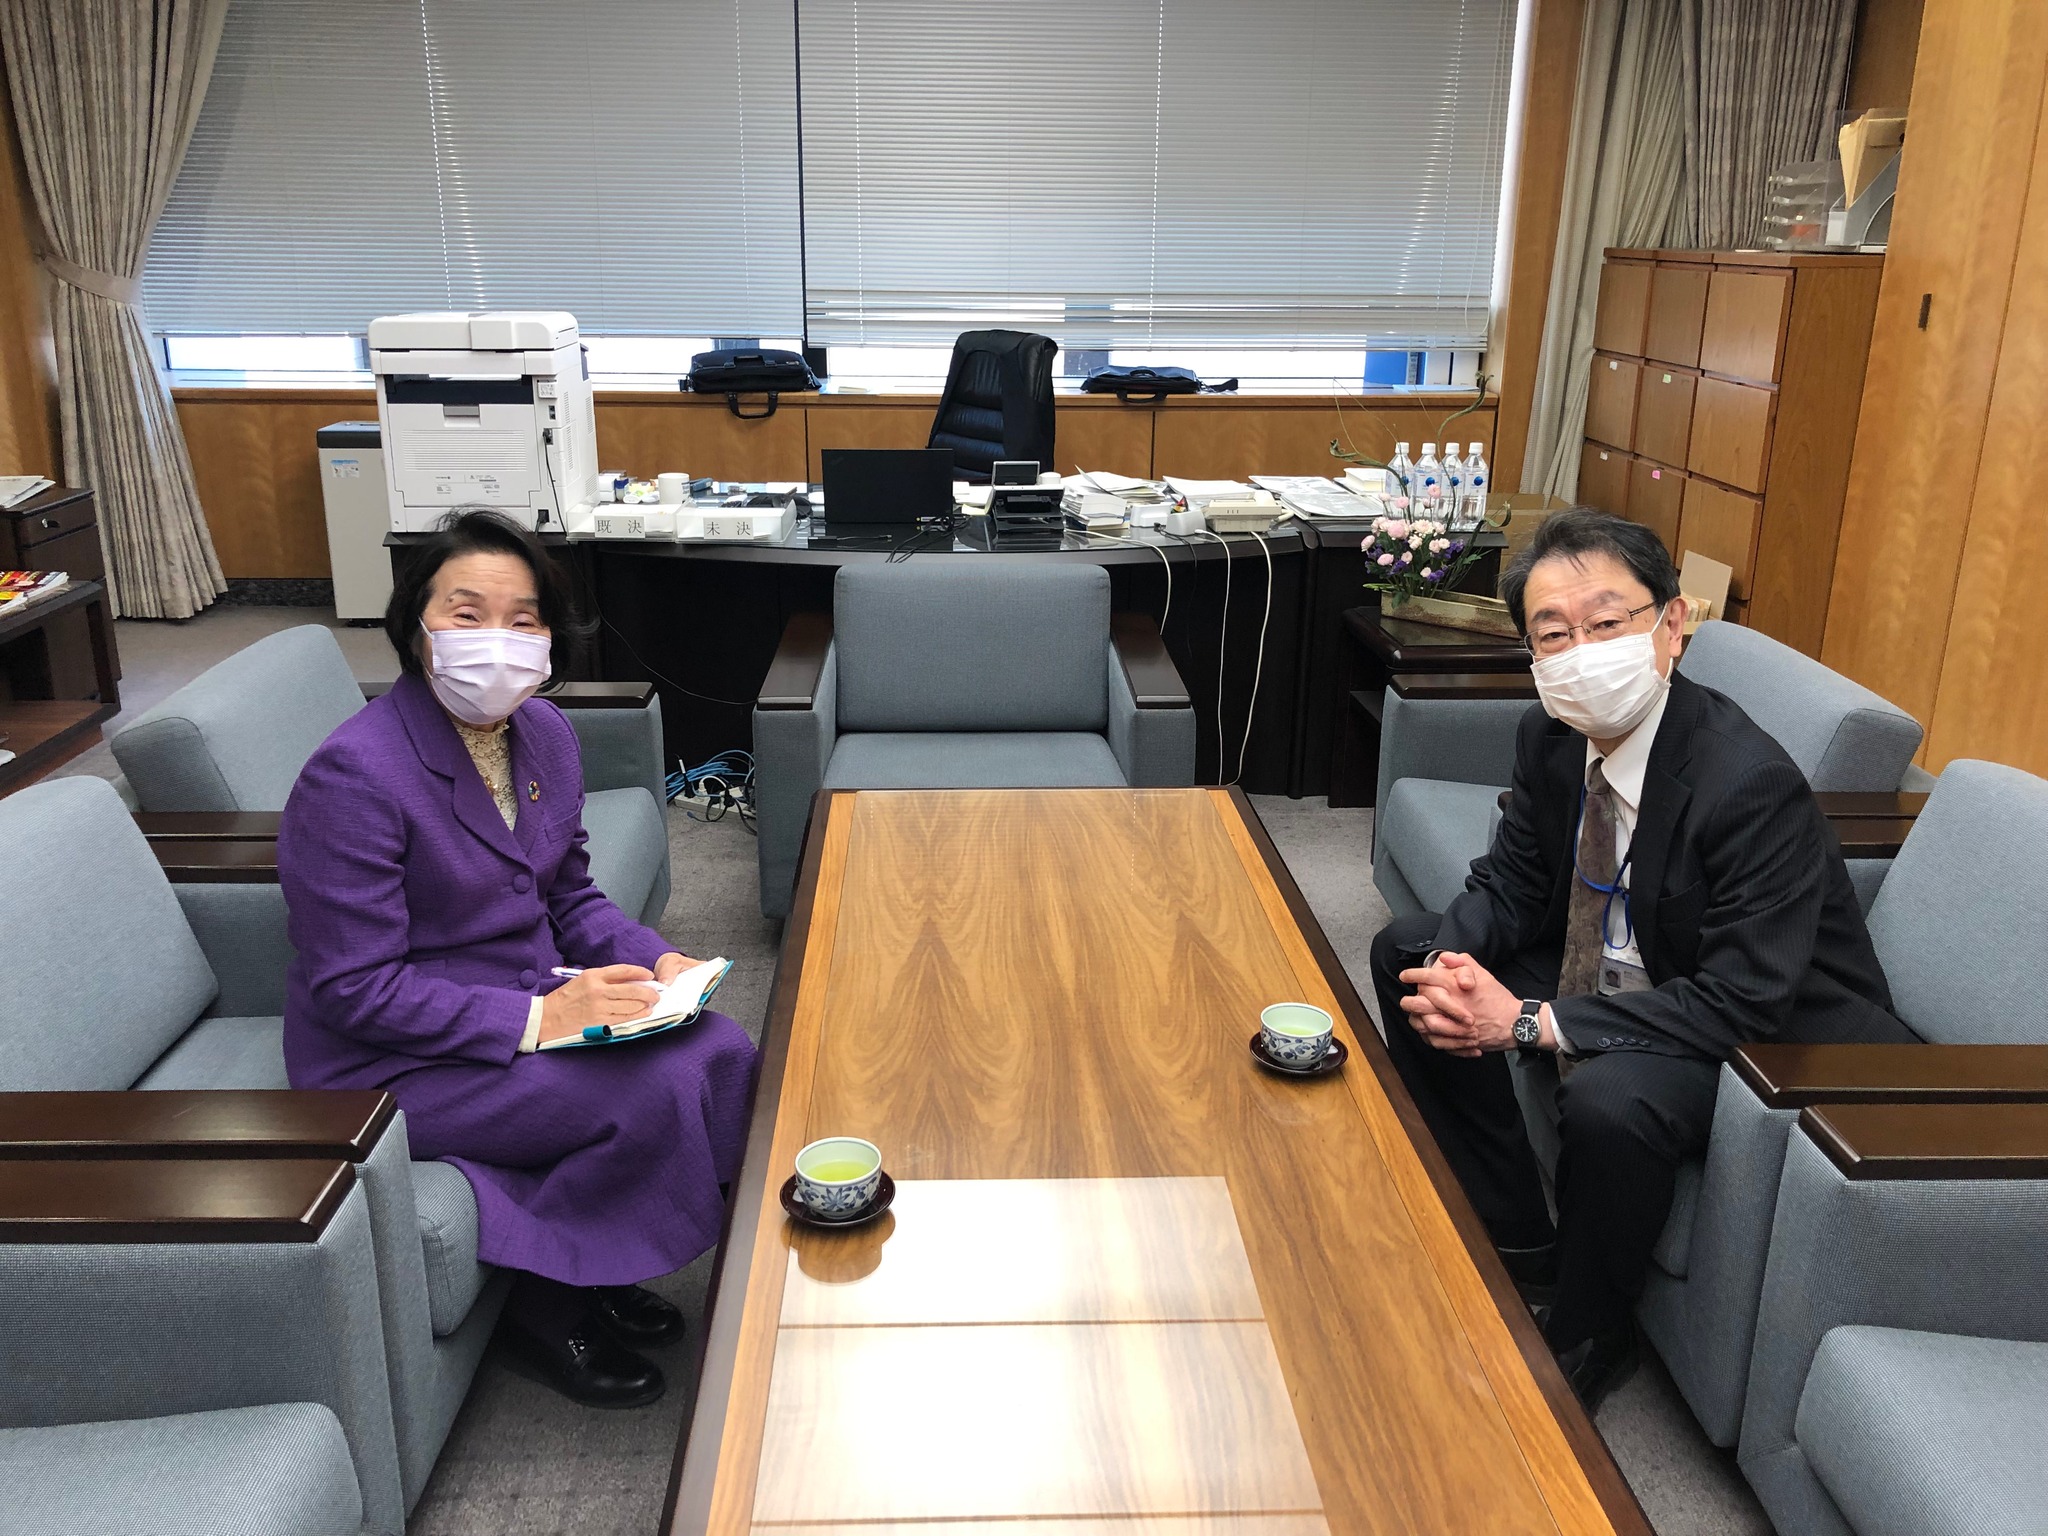 総務省統計委員会をご担当されている総務審議官の山下哲夫さんと対話しました。